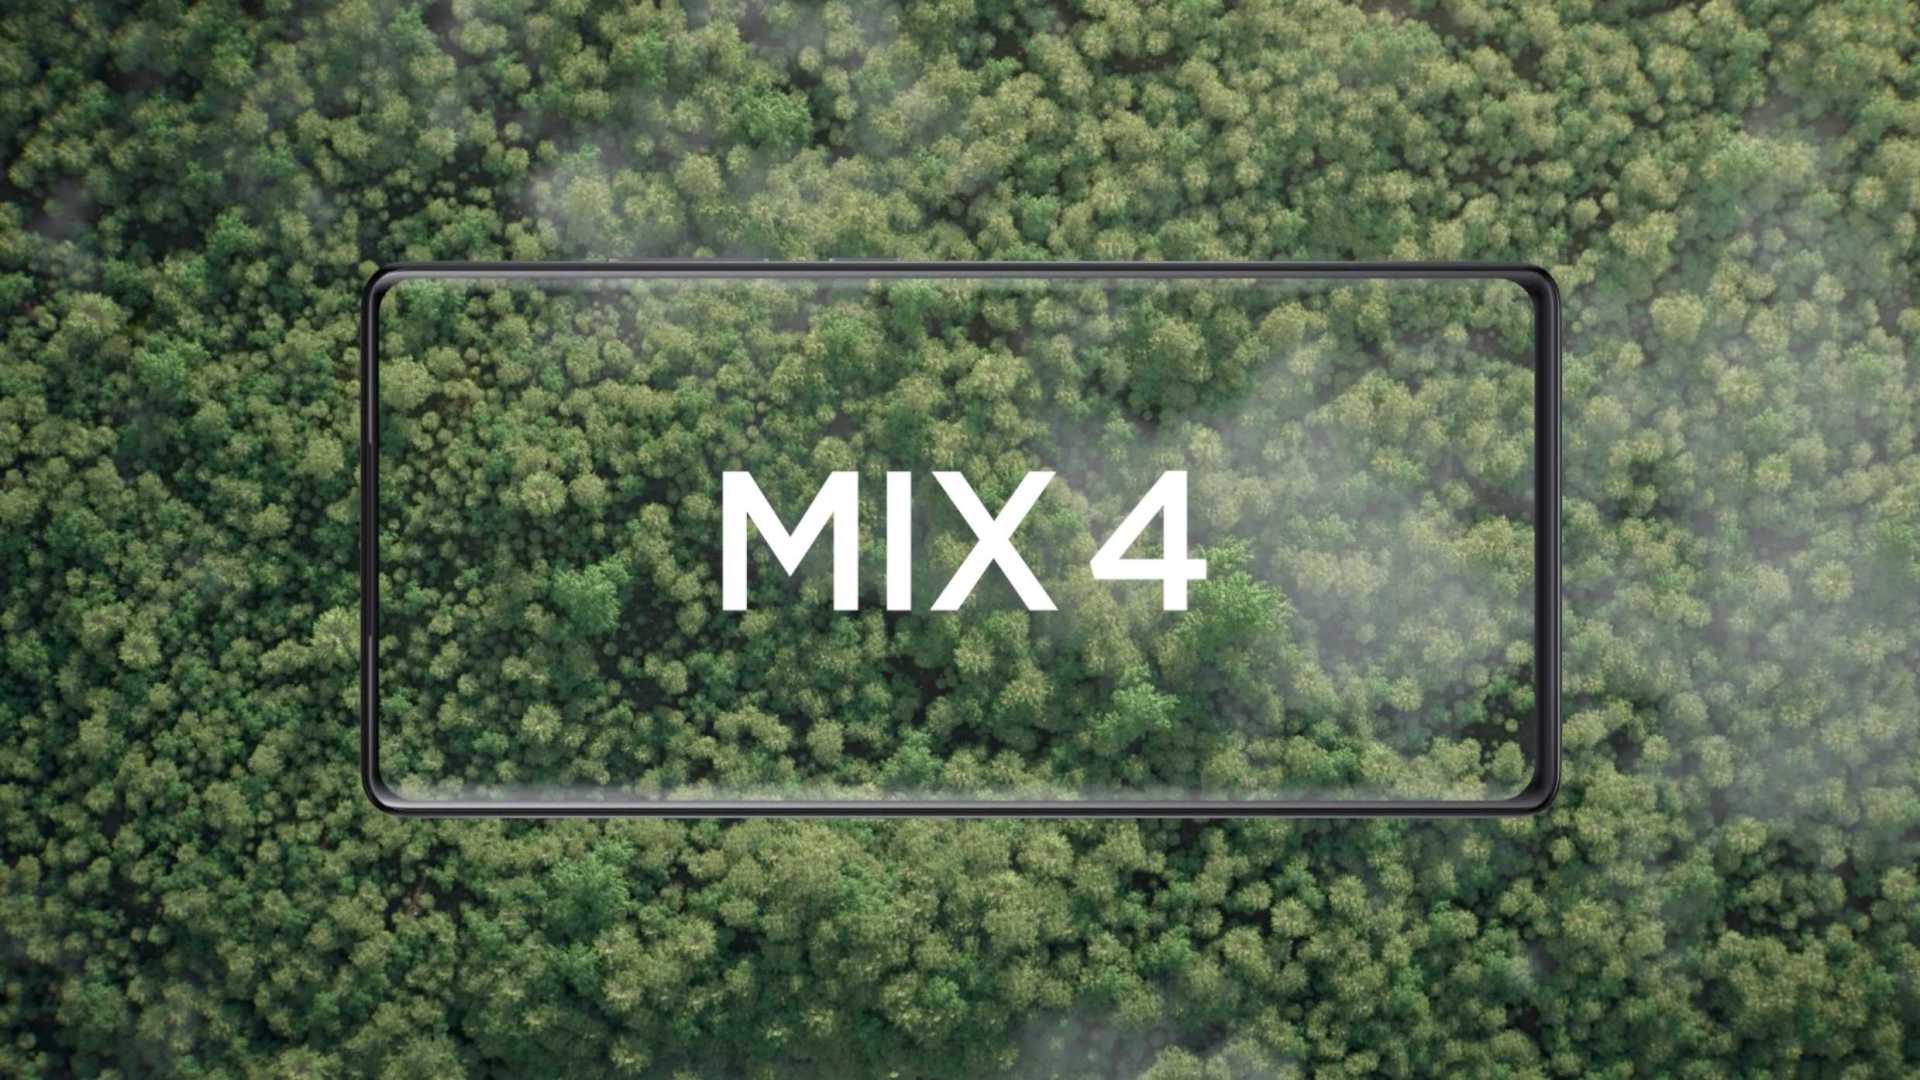 小米 MIX4 产品预热视频 / xiaomi MIX4 teaser